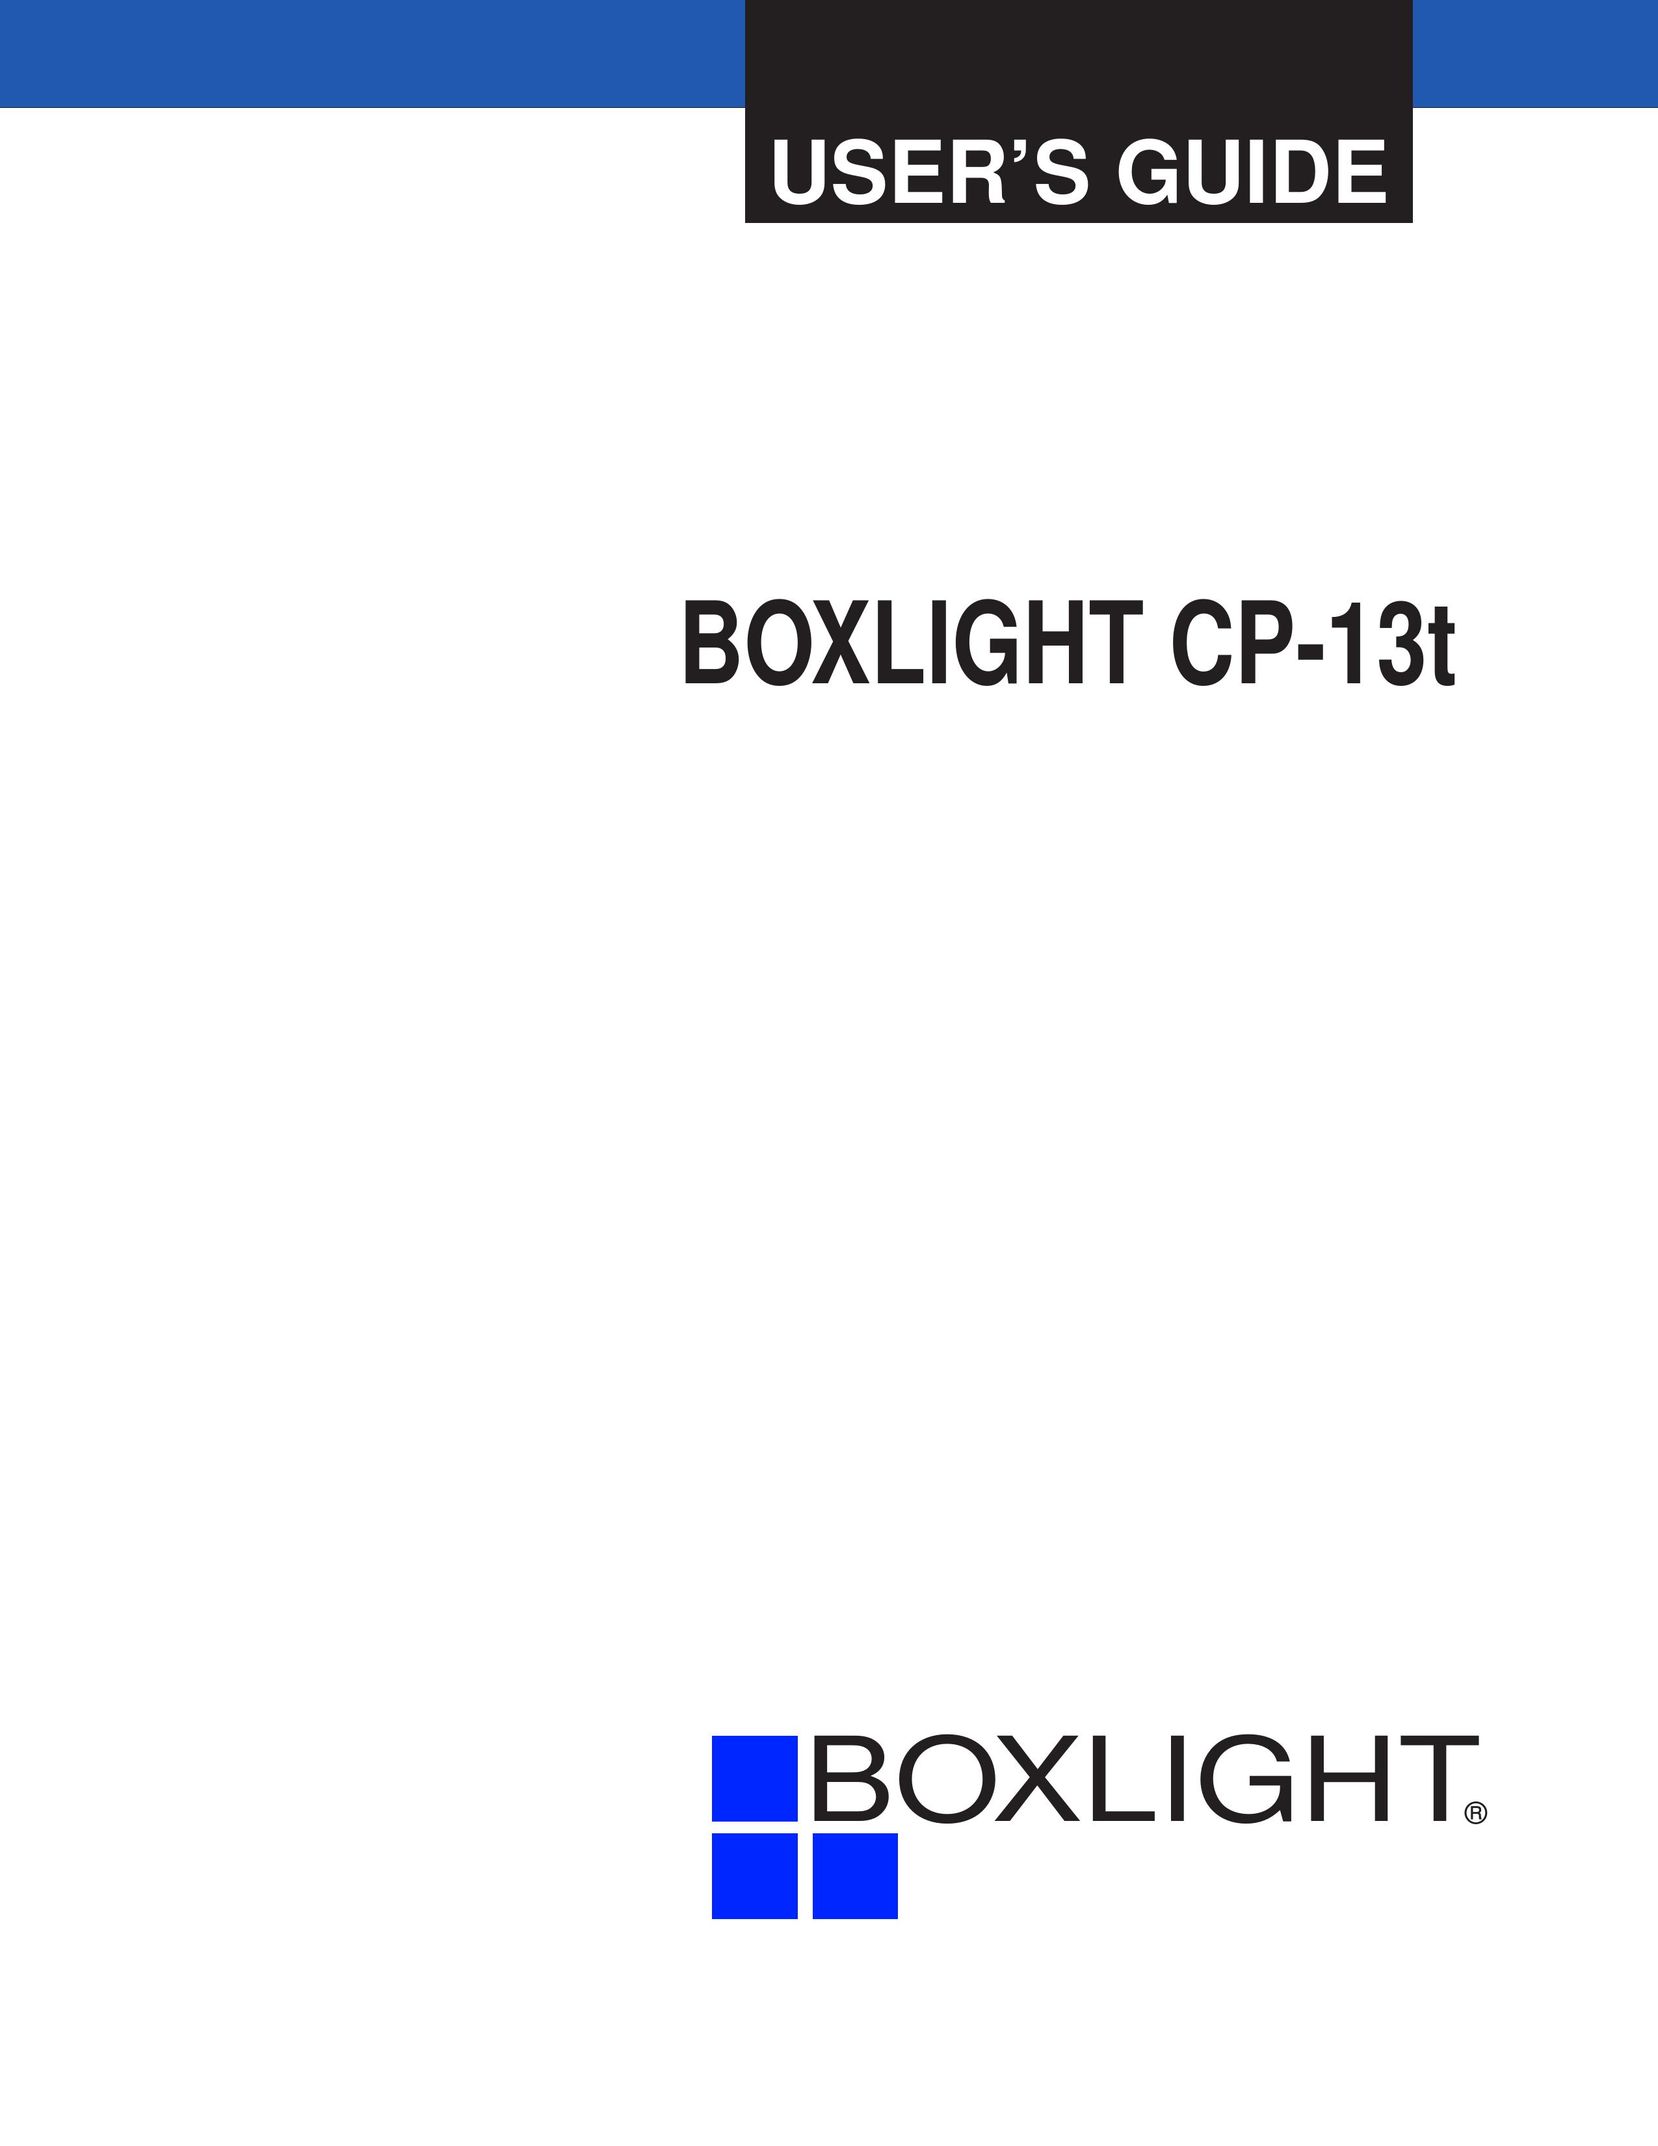 BOXLIGHT CP-13t Projector User Manual